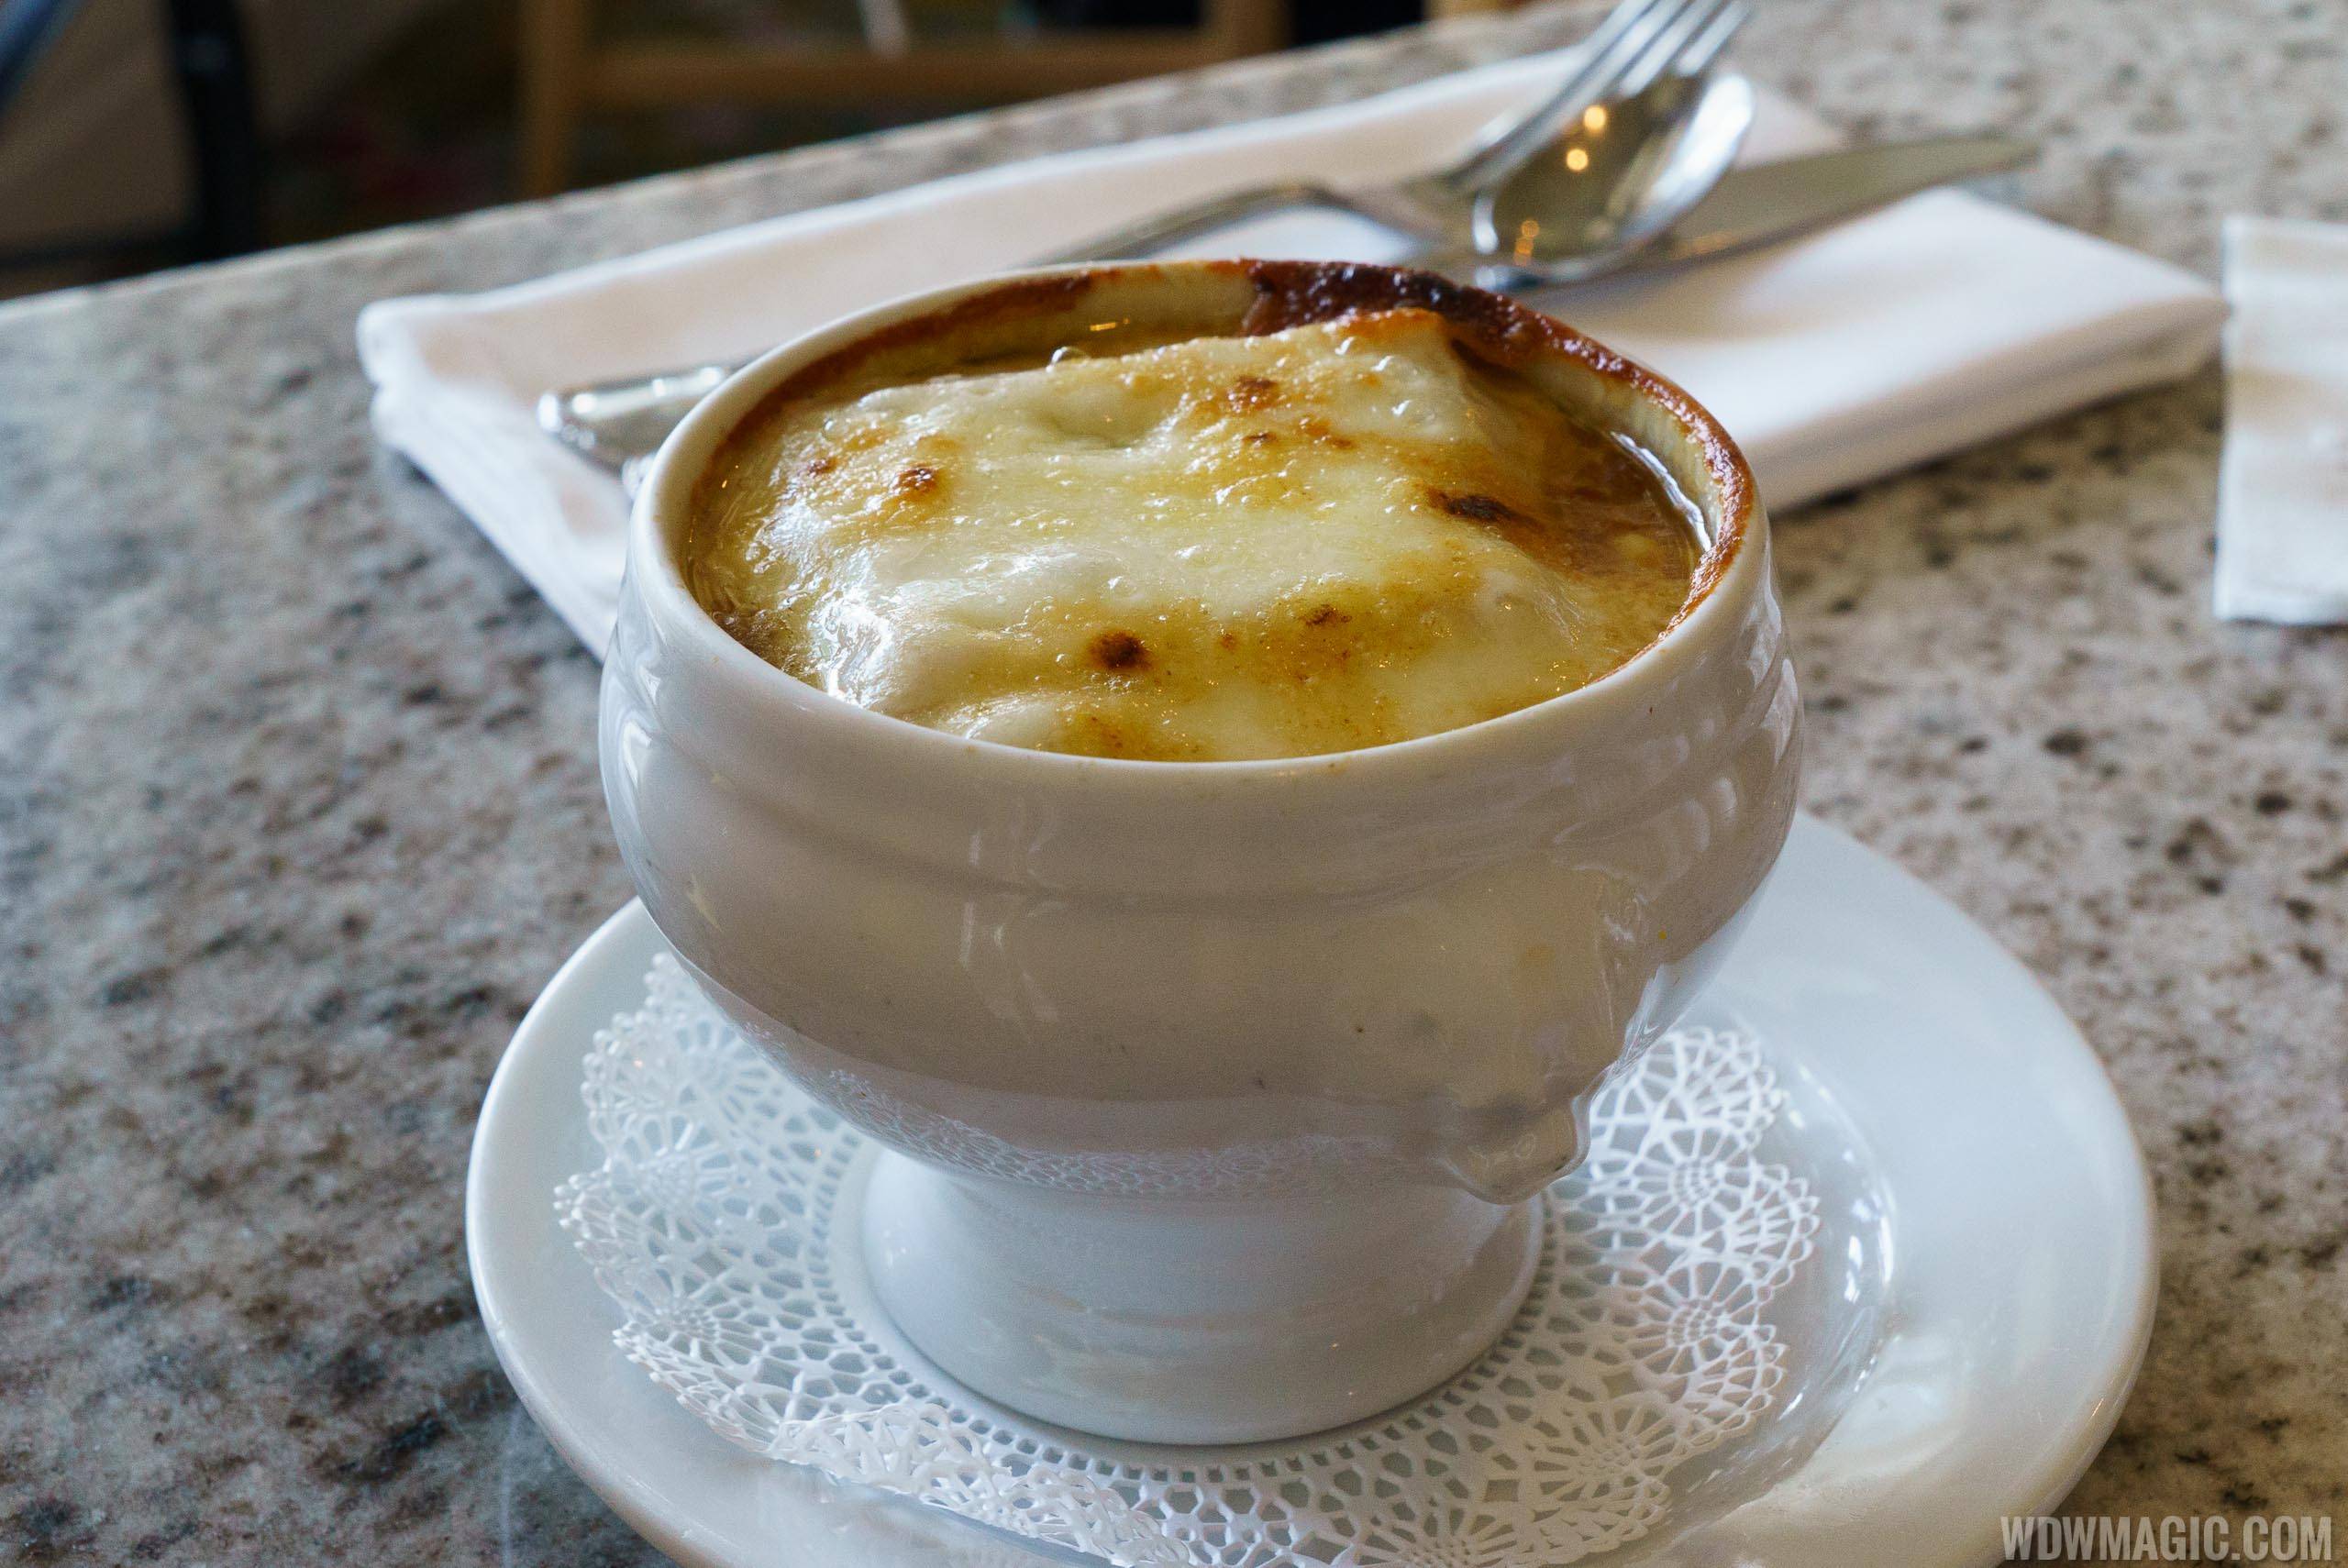 Grand Floridian Cafe lunch - Carmelized Onion Soup Gratinée